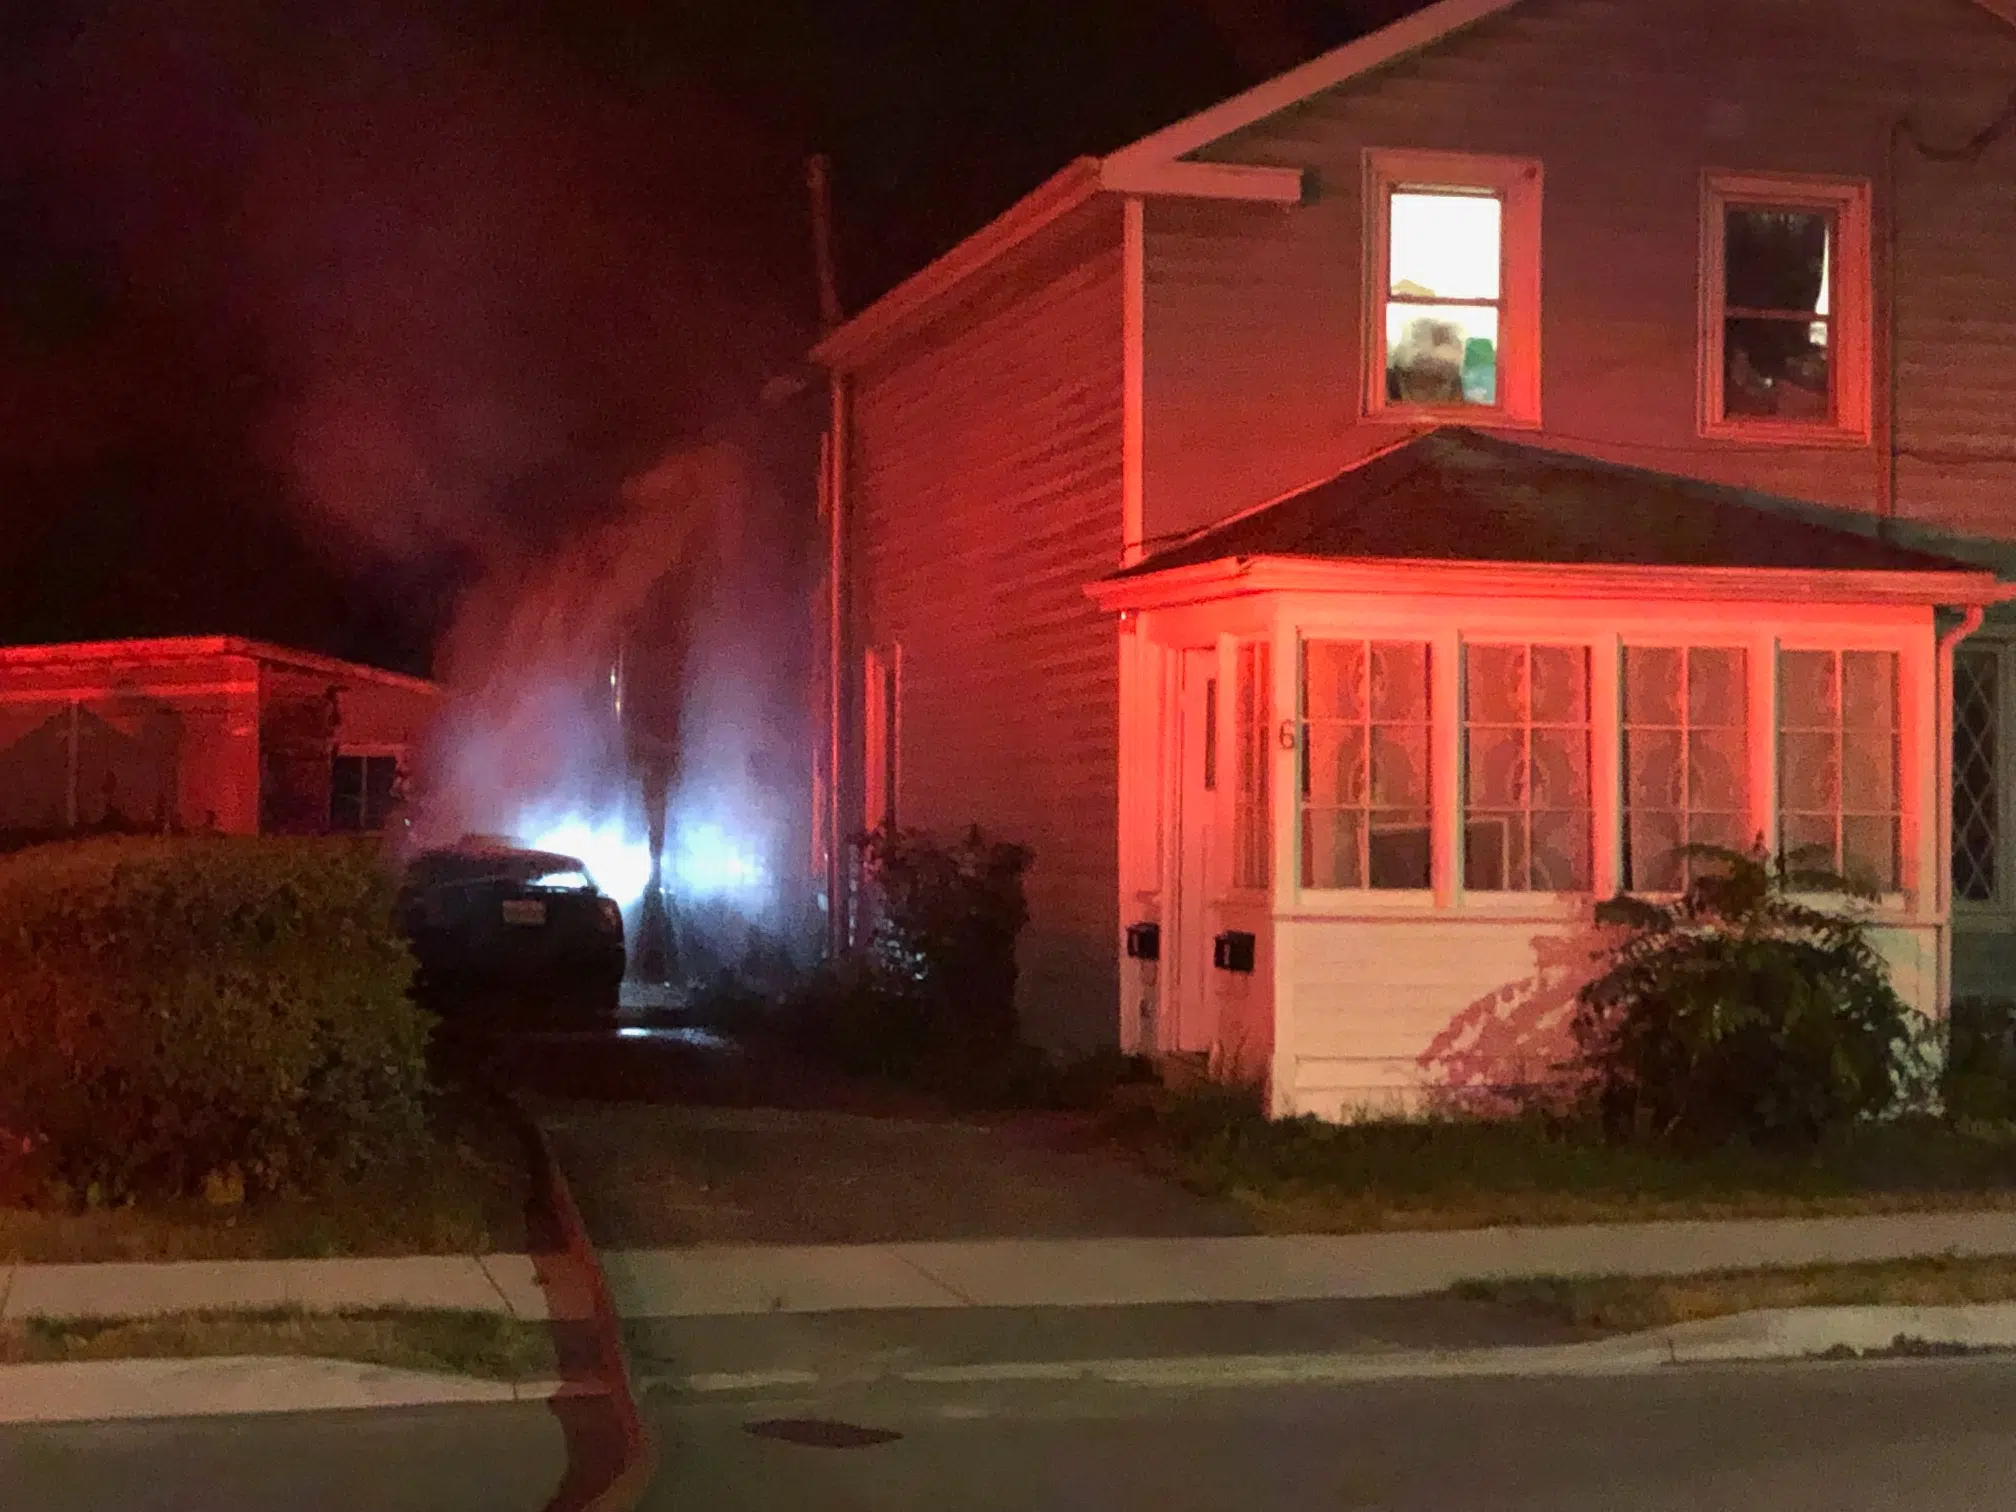 Car/house fire in Belleville